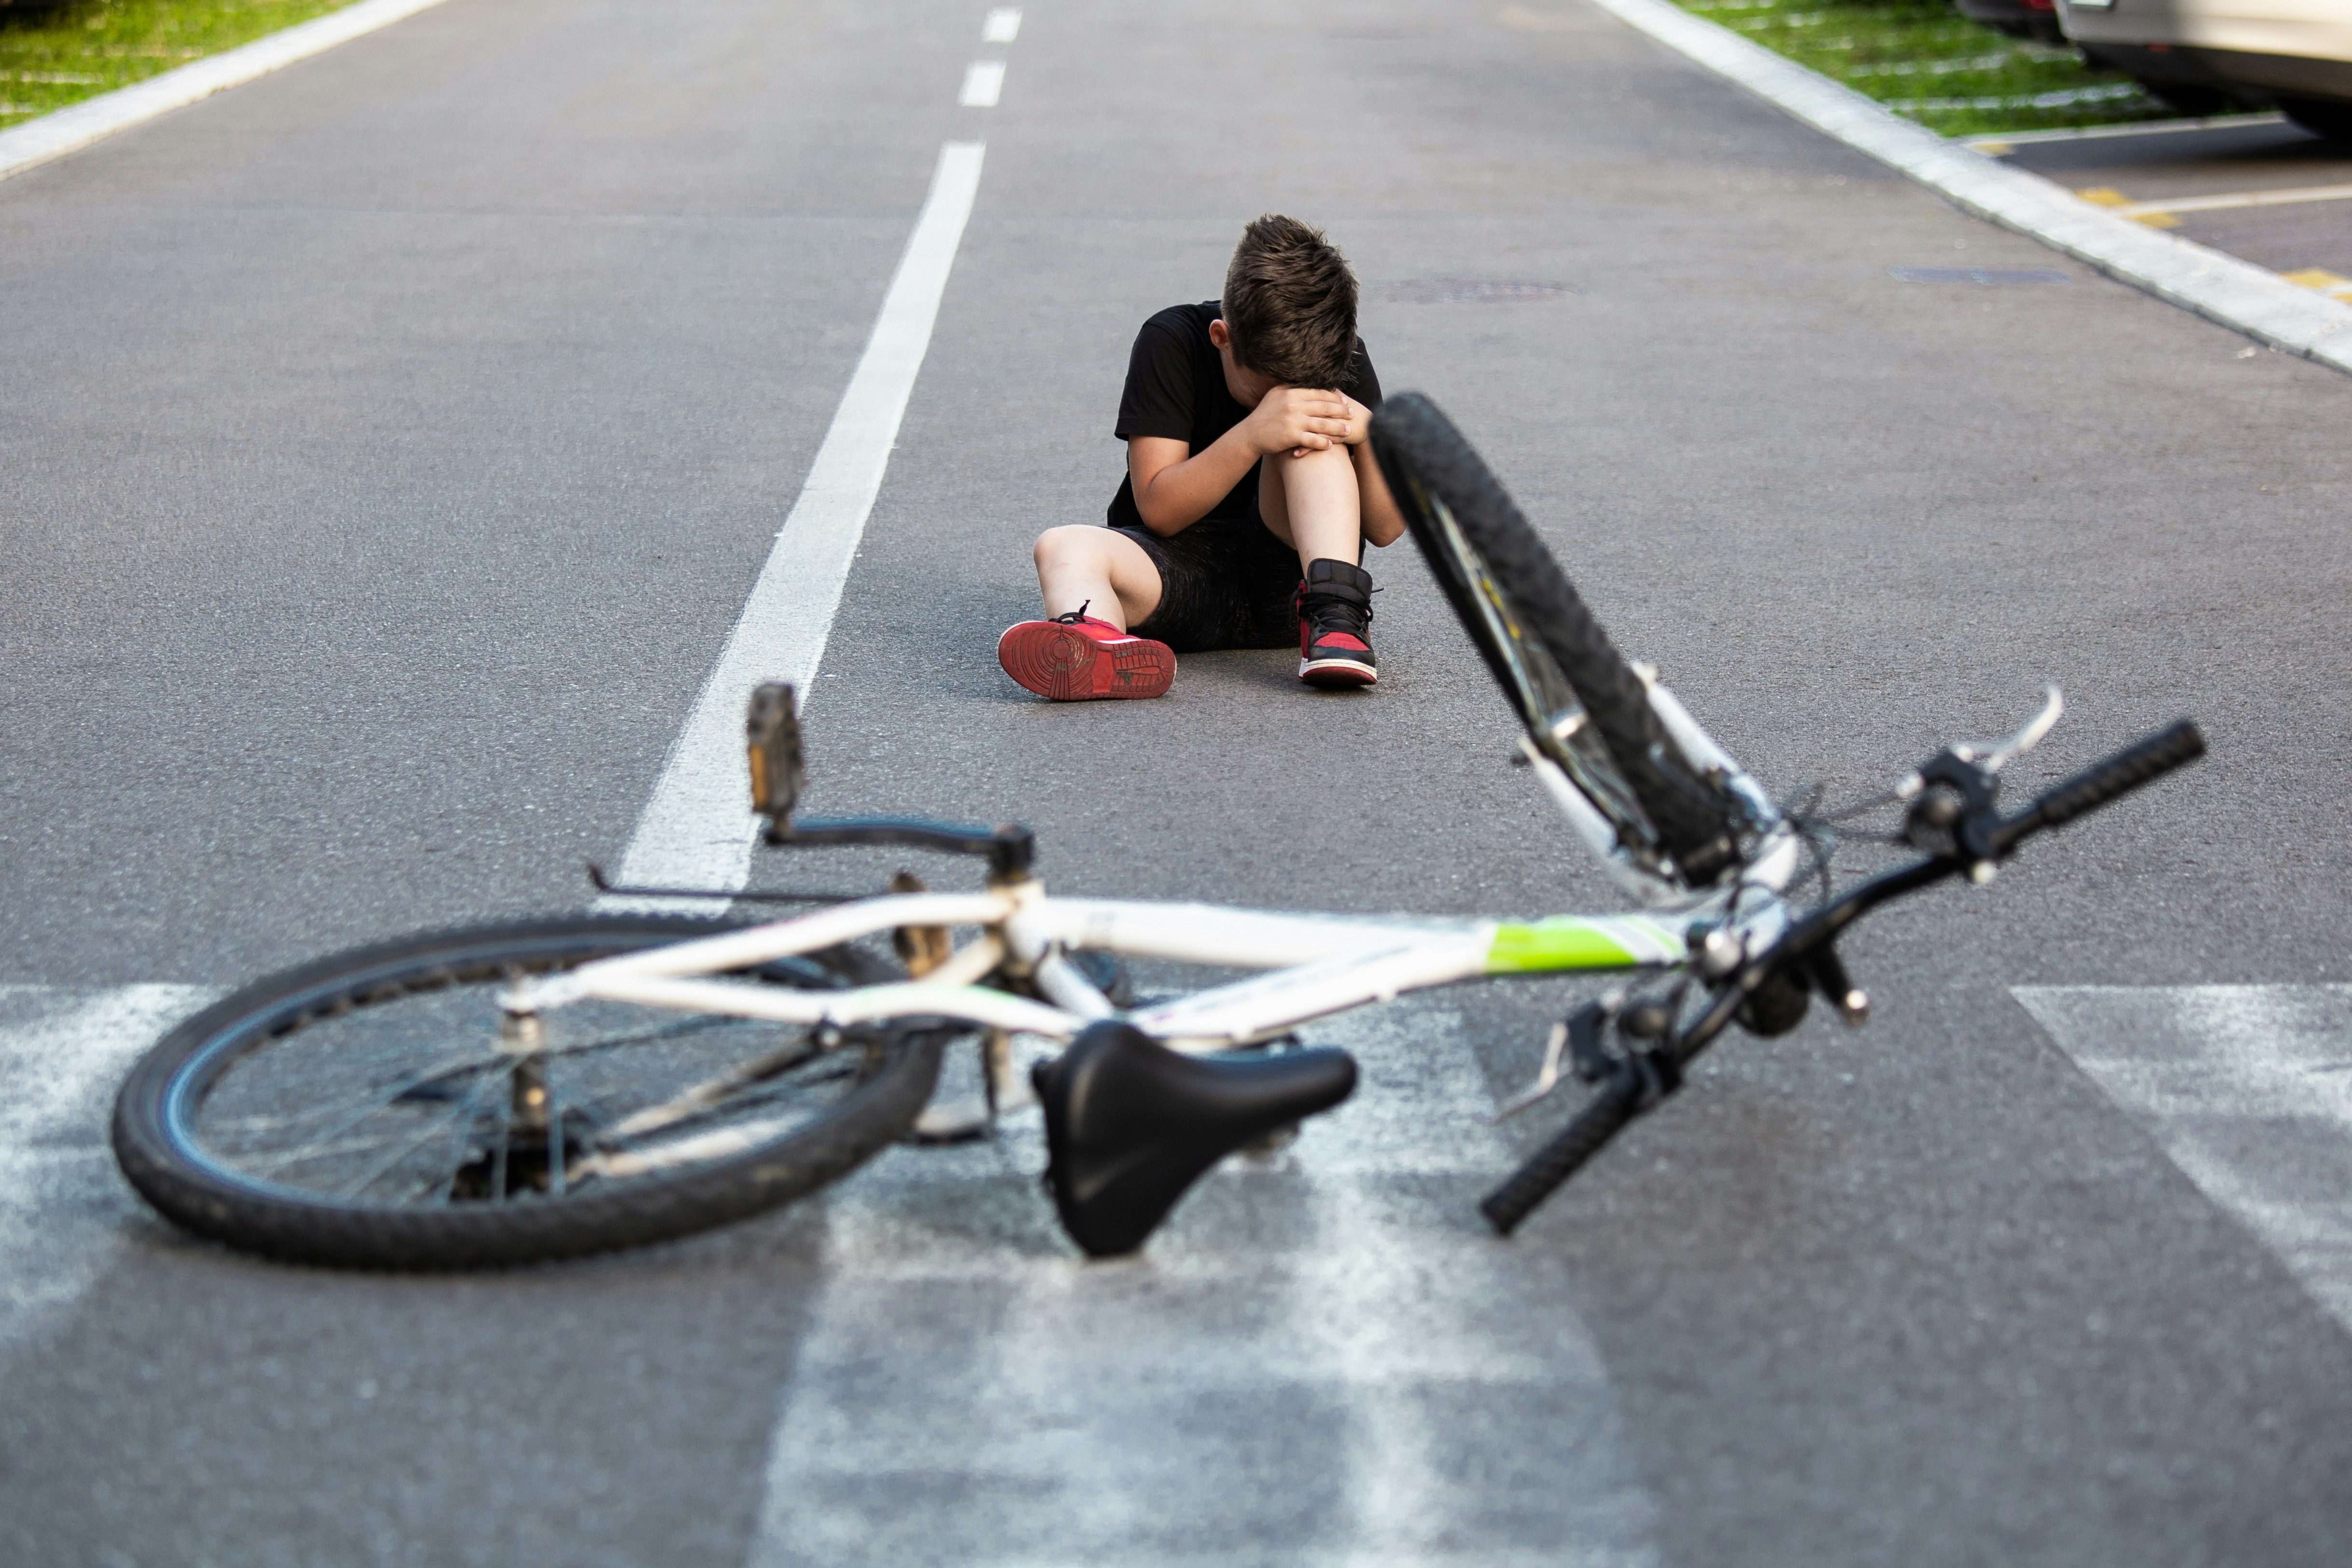 Child Injured on Bicycle detail image